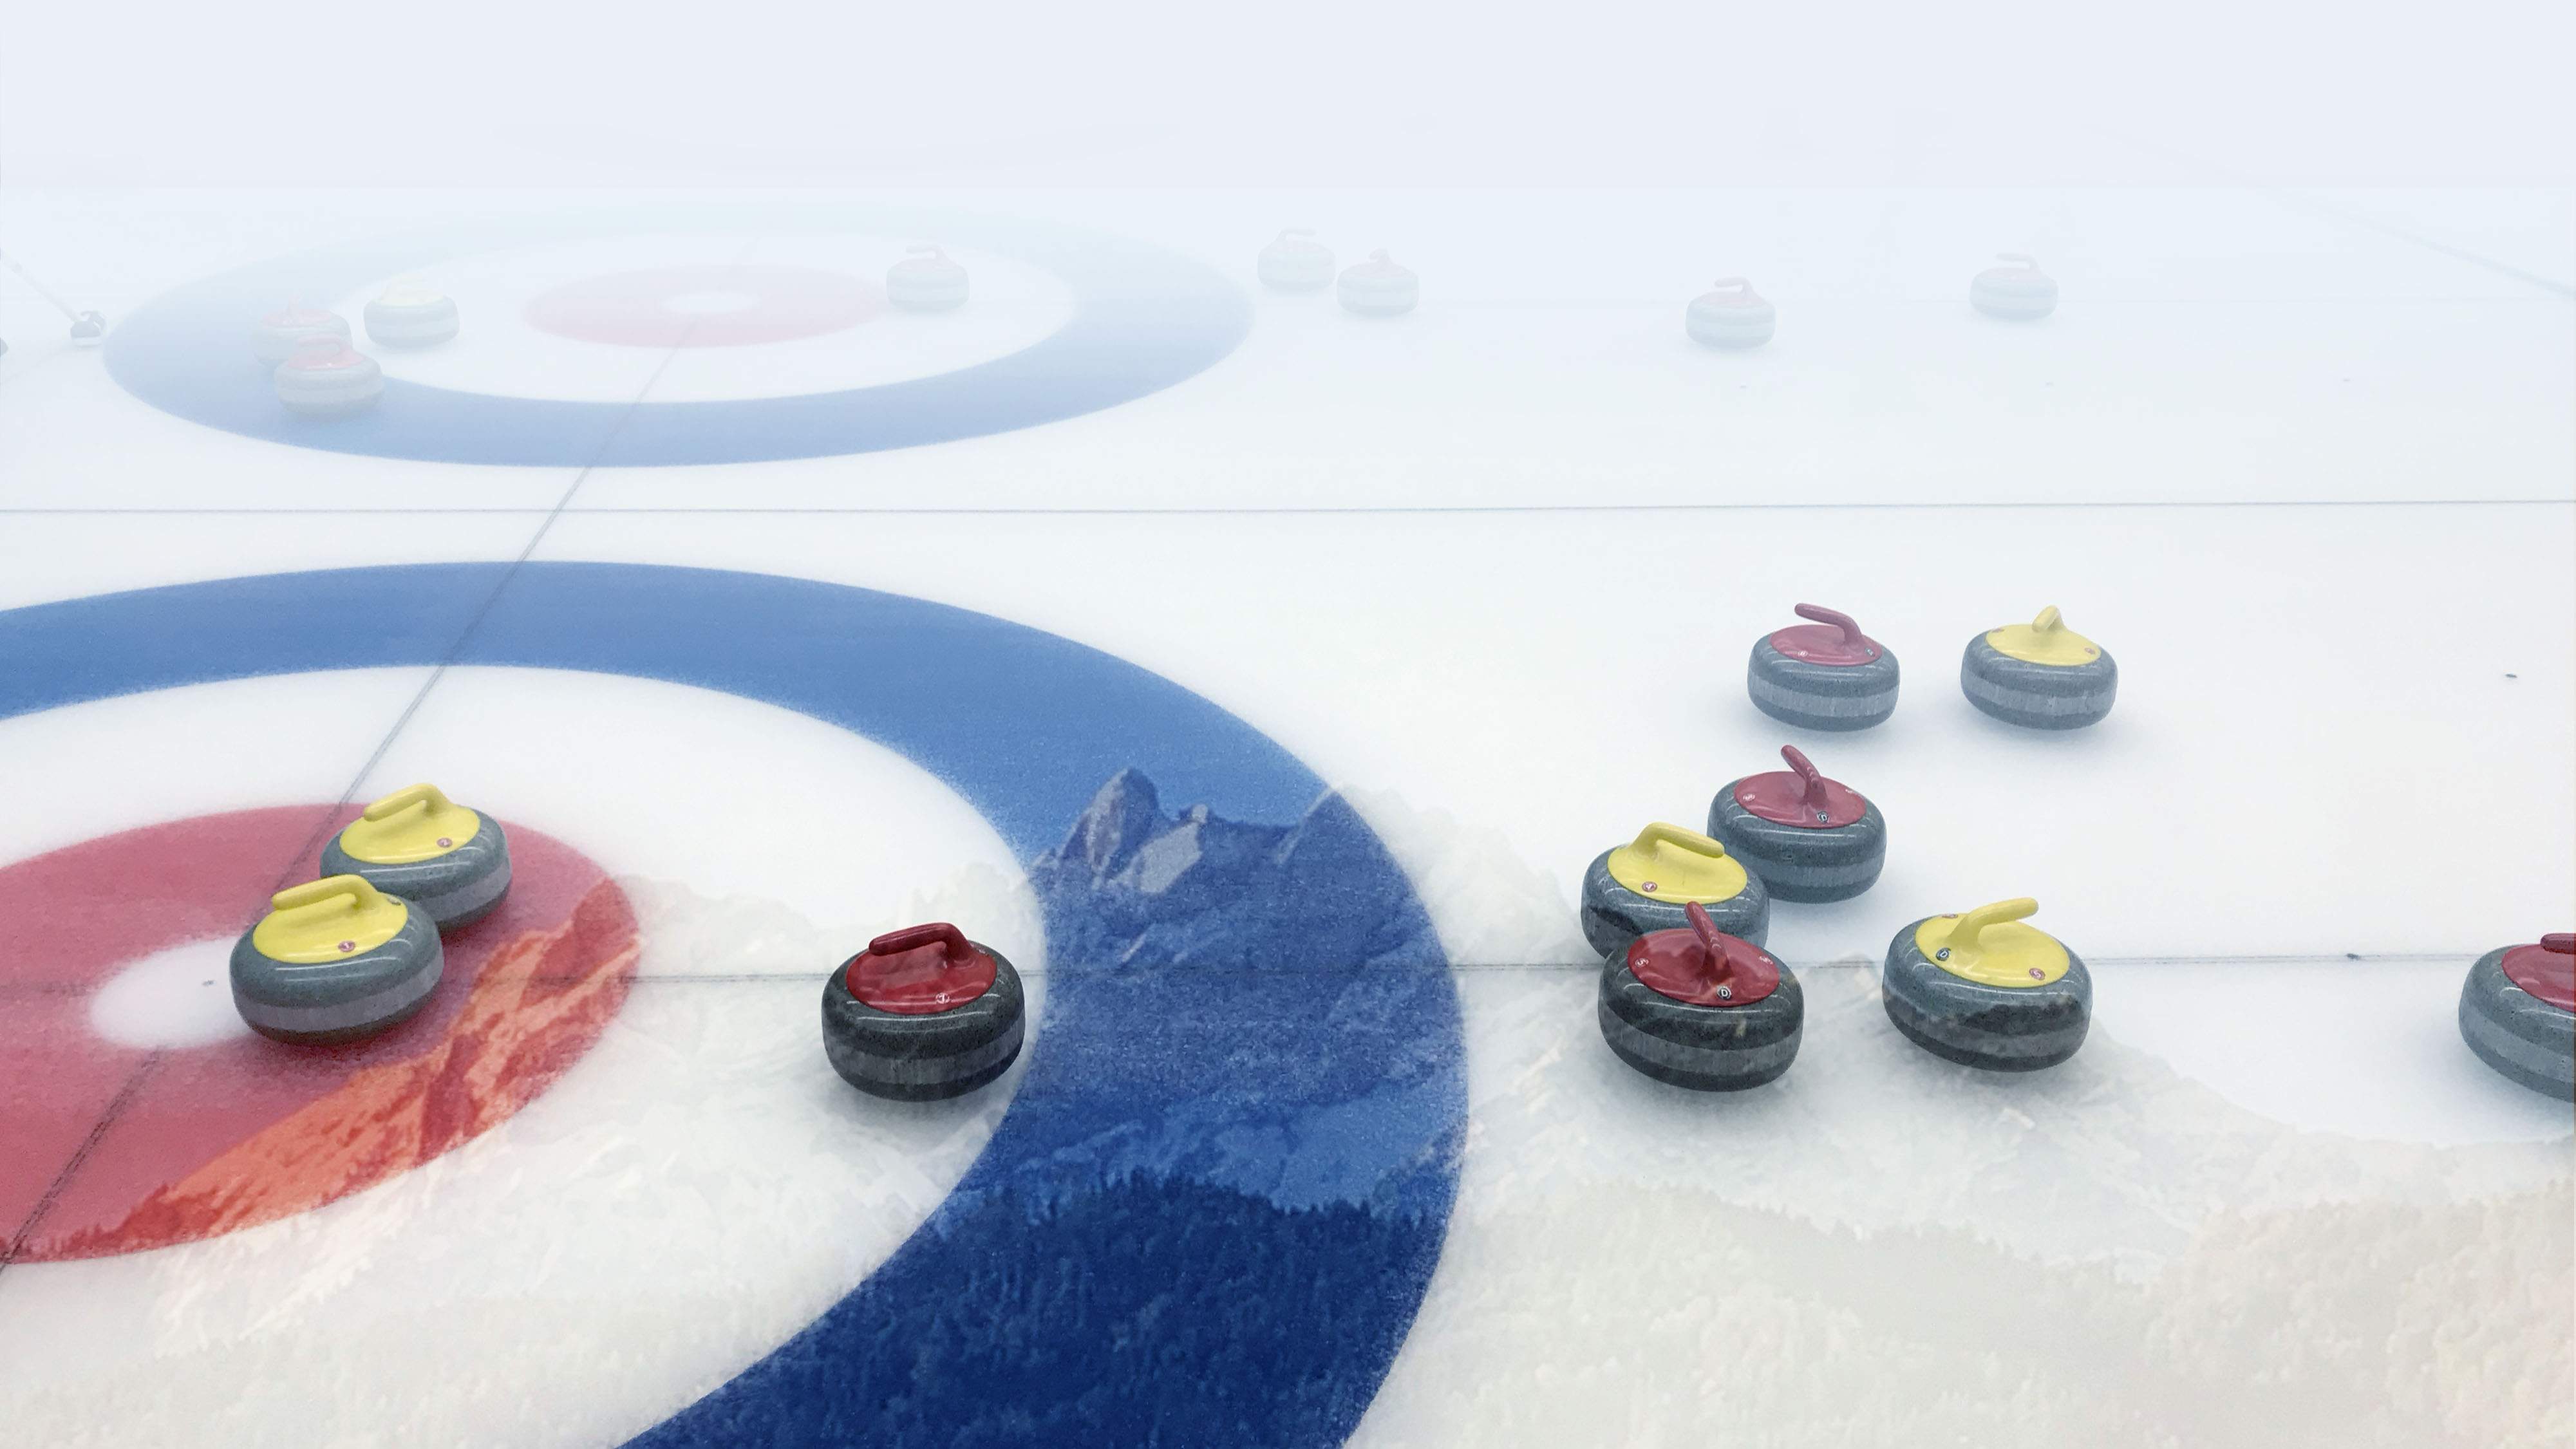 Willkommen in der Curlinghalle Luzern